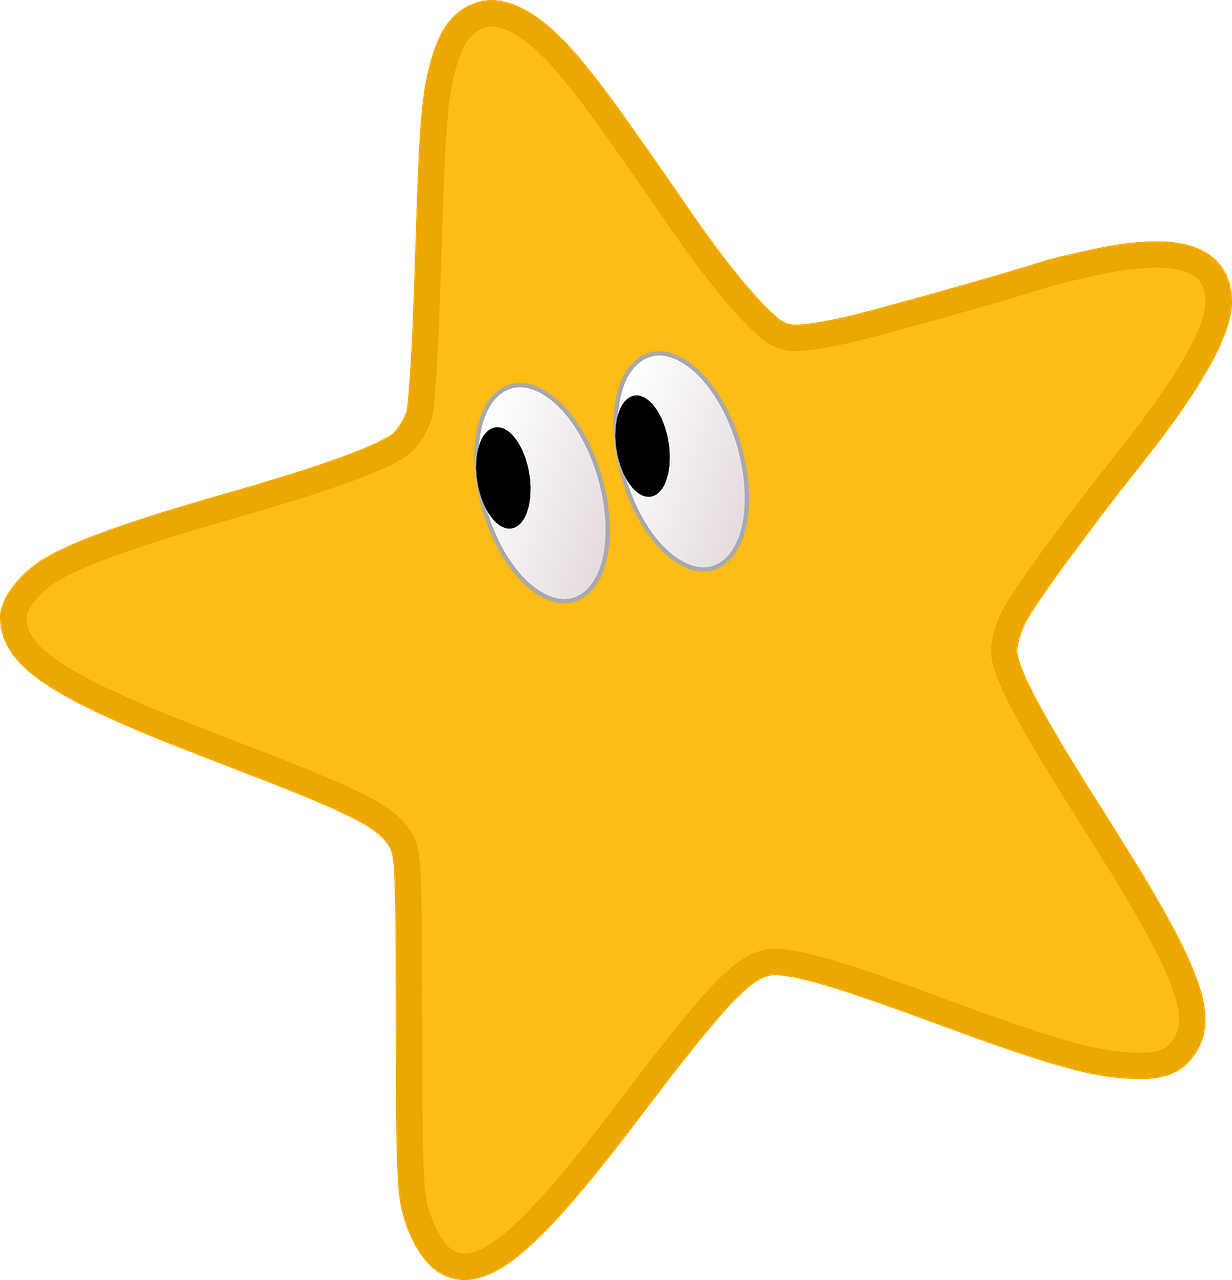 star yellow yellow star free photo